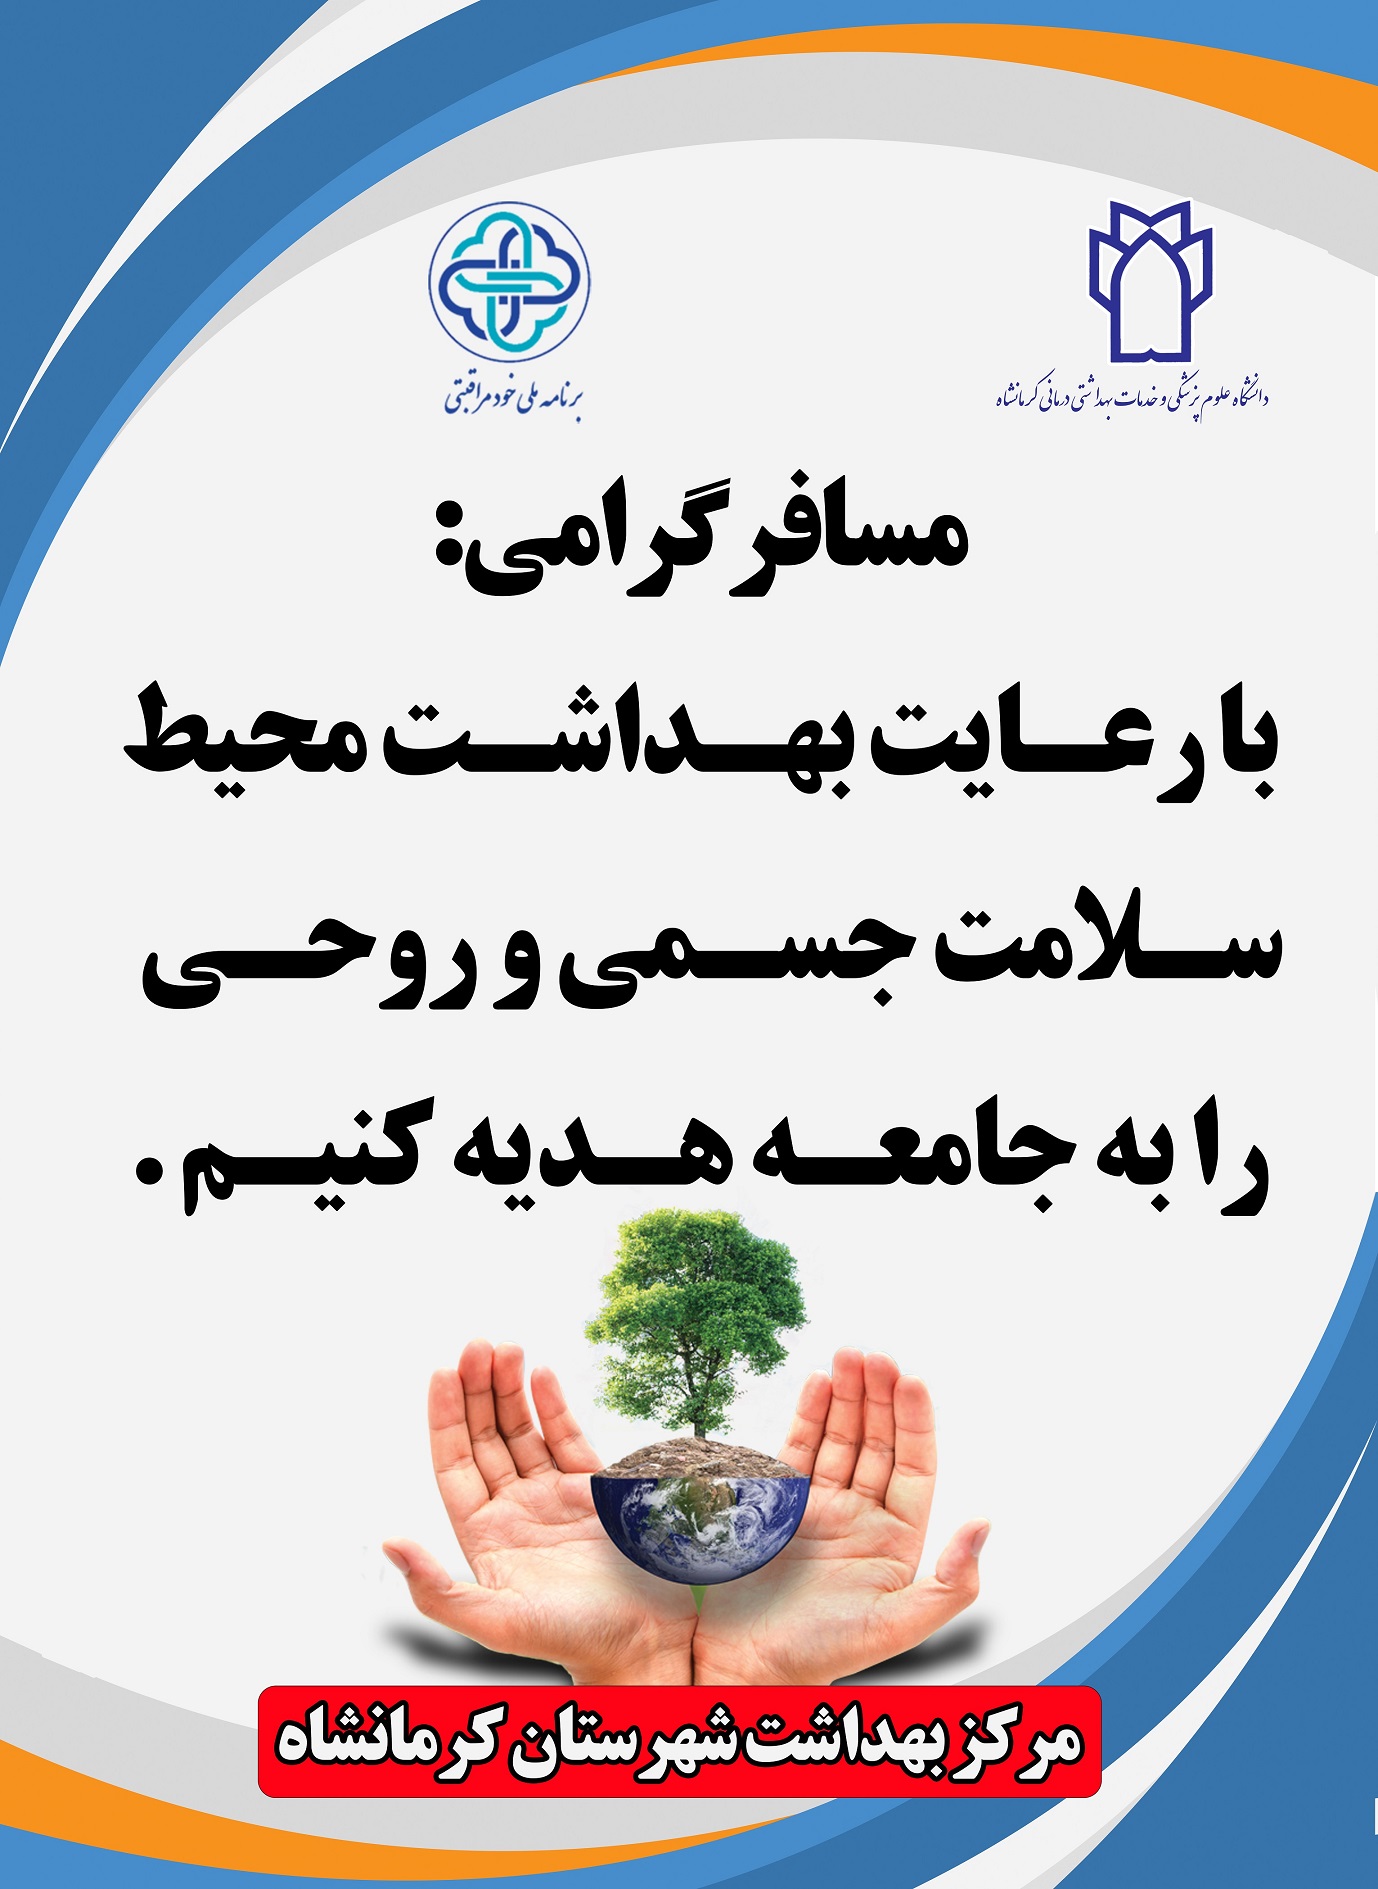 پوسترهای آموزشی مربوط خودمراقبتی شهرستان کرمانشاه 6